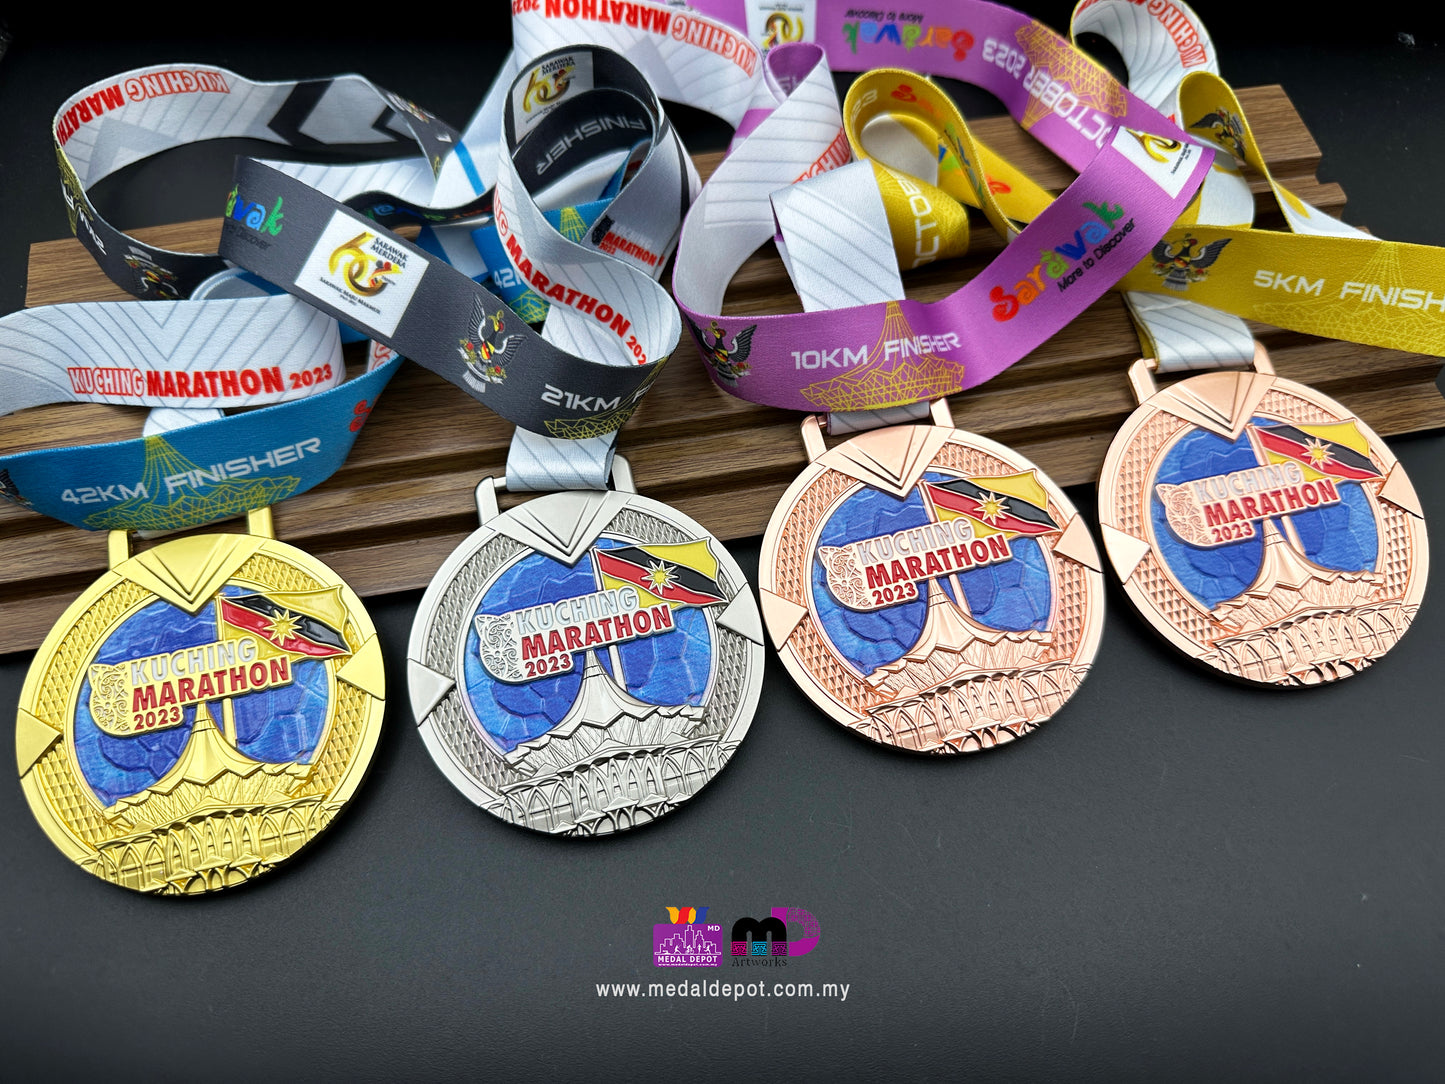 Kuching Marathon 2023 medal